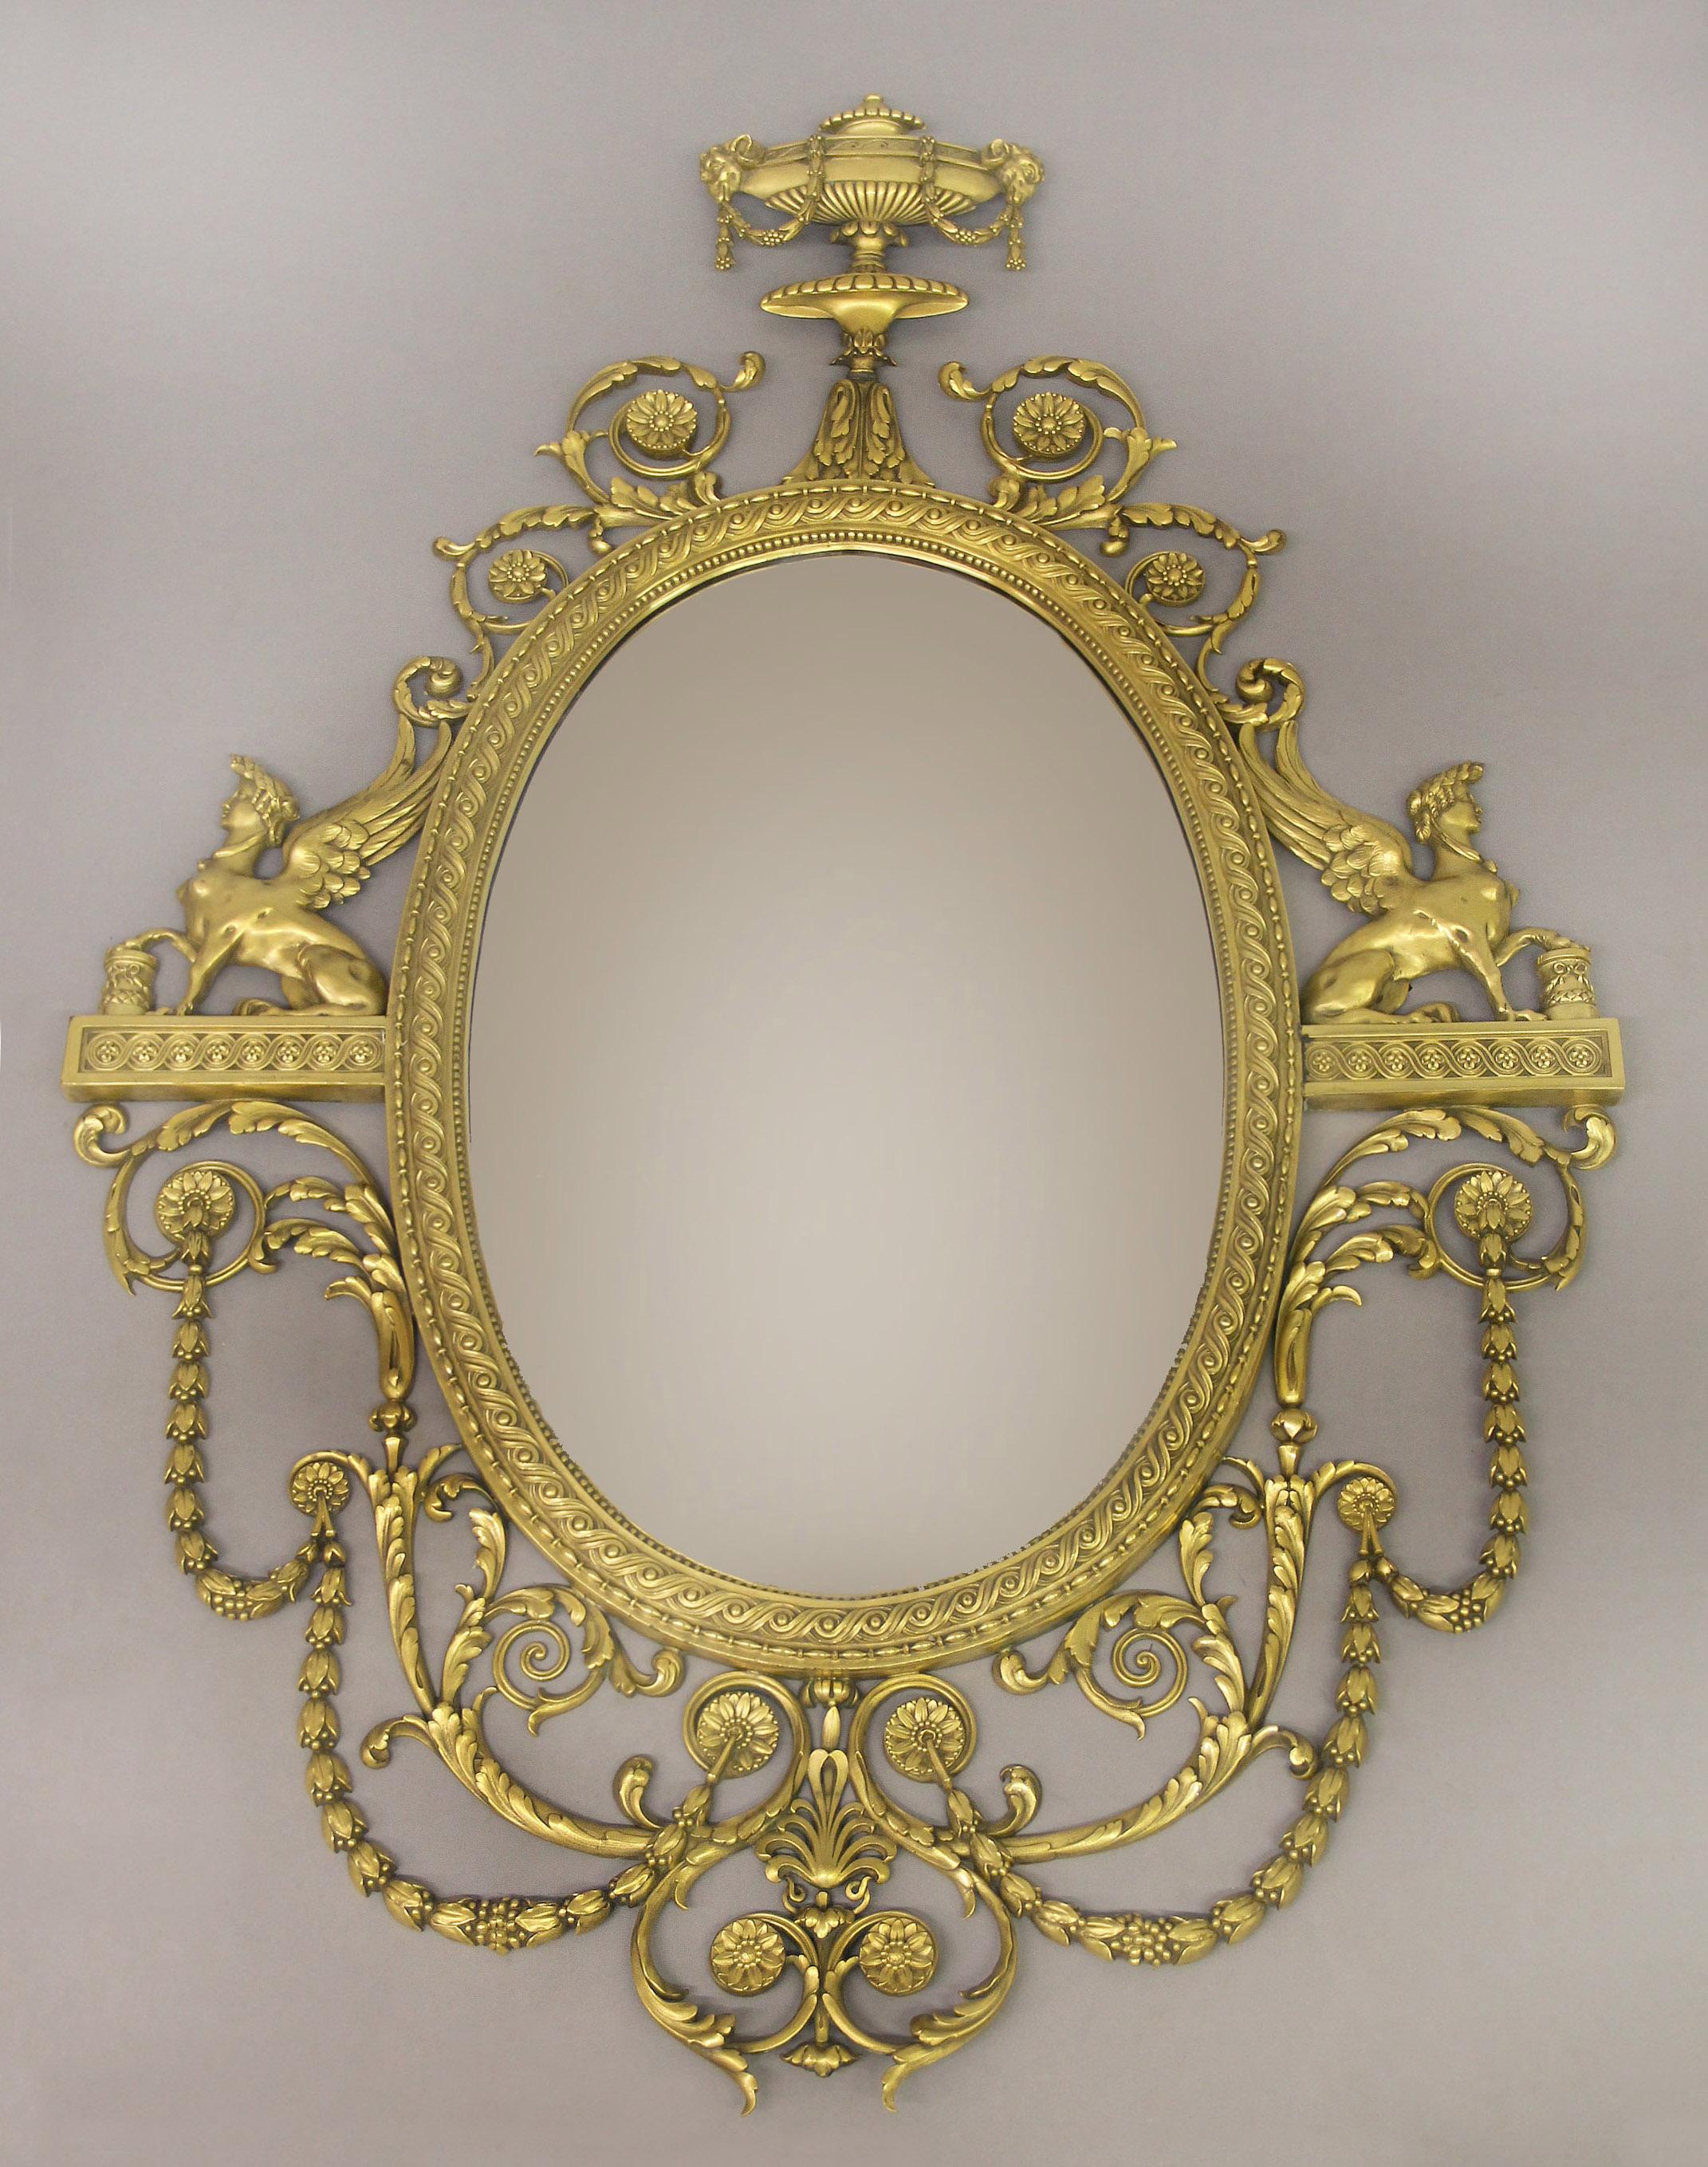 Miroir en bronze doré d'excellente qualité du début du 20e siècle par Caldwell

Edward F. Caldwell and Co. Inc. New York

Le miroir ovale dans un cadre guilloché et perlé, surmonté d'une urne avec des têtes de béliers drapées de festons